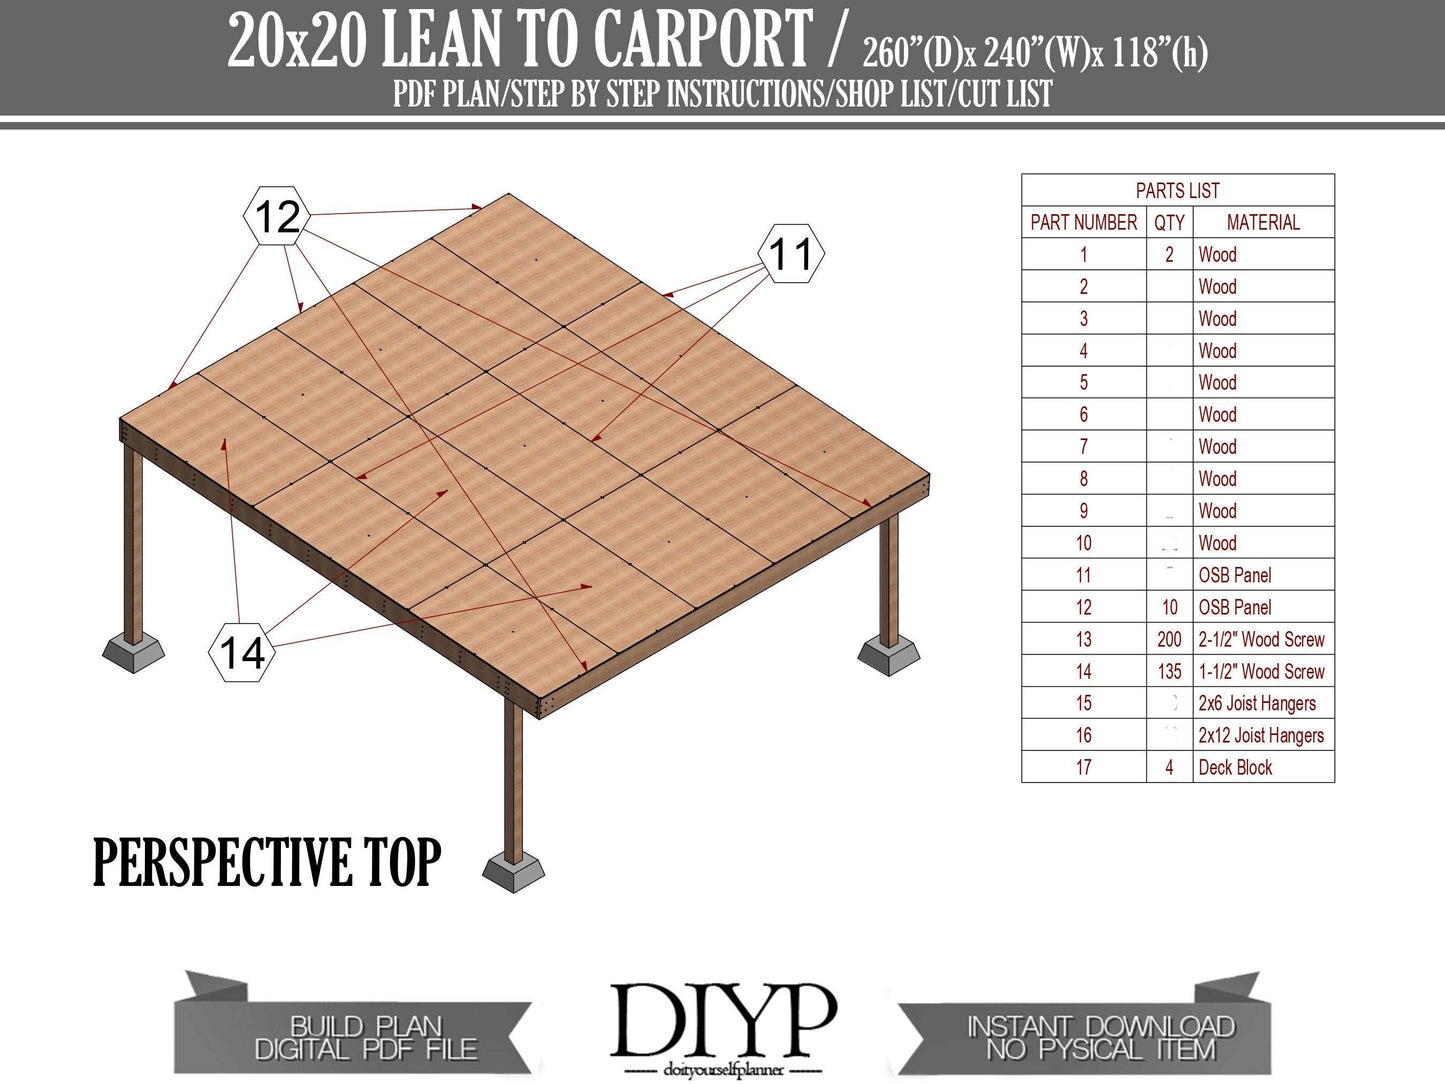 Diy plans for Attached car port , diy car port ideas , 20x20 Lean to carage plans